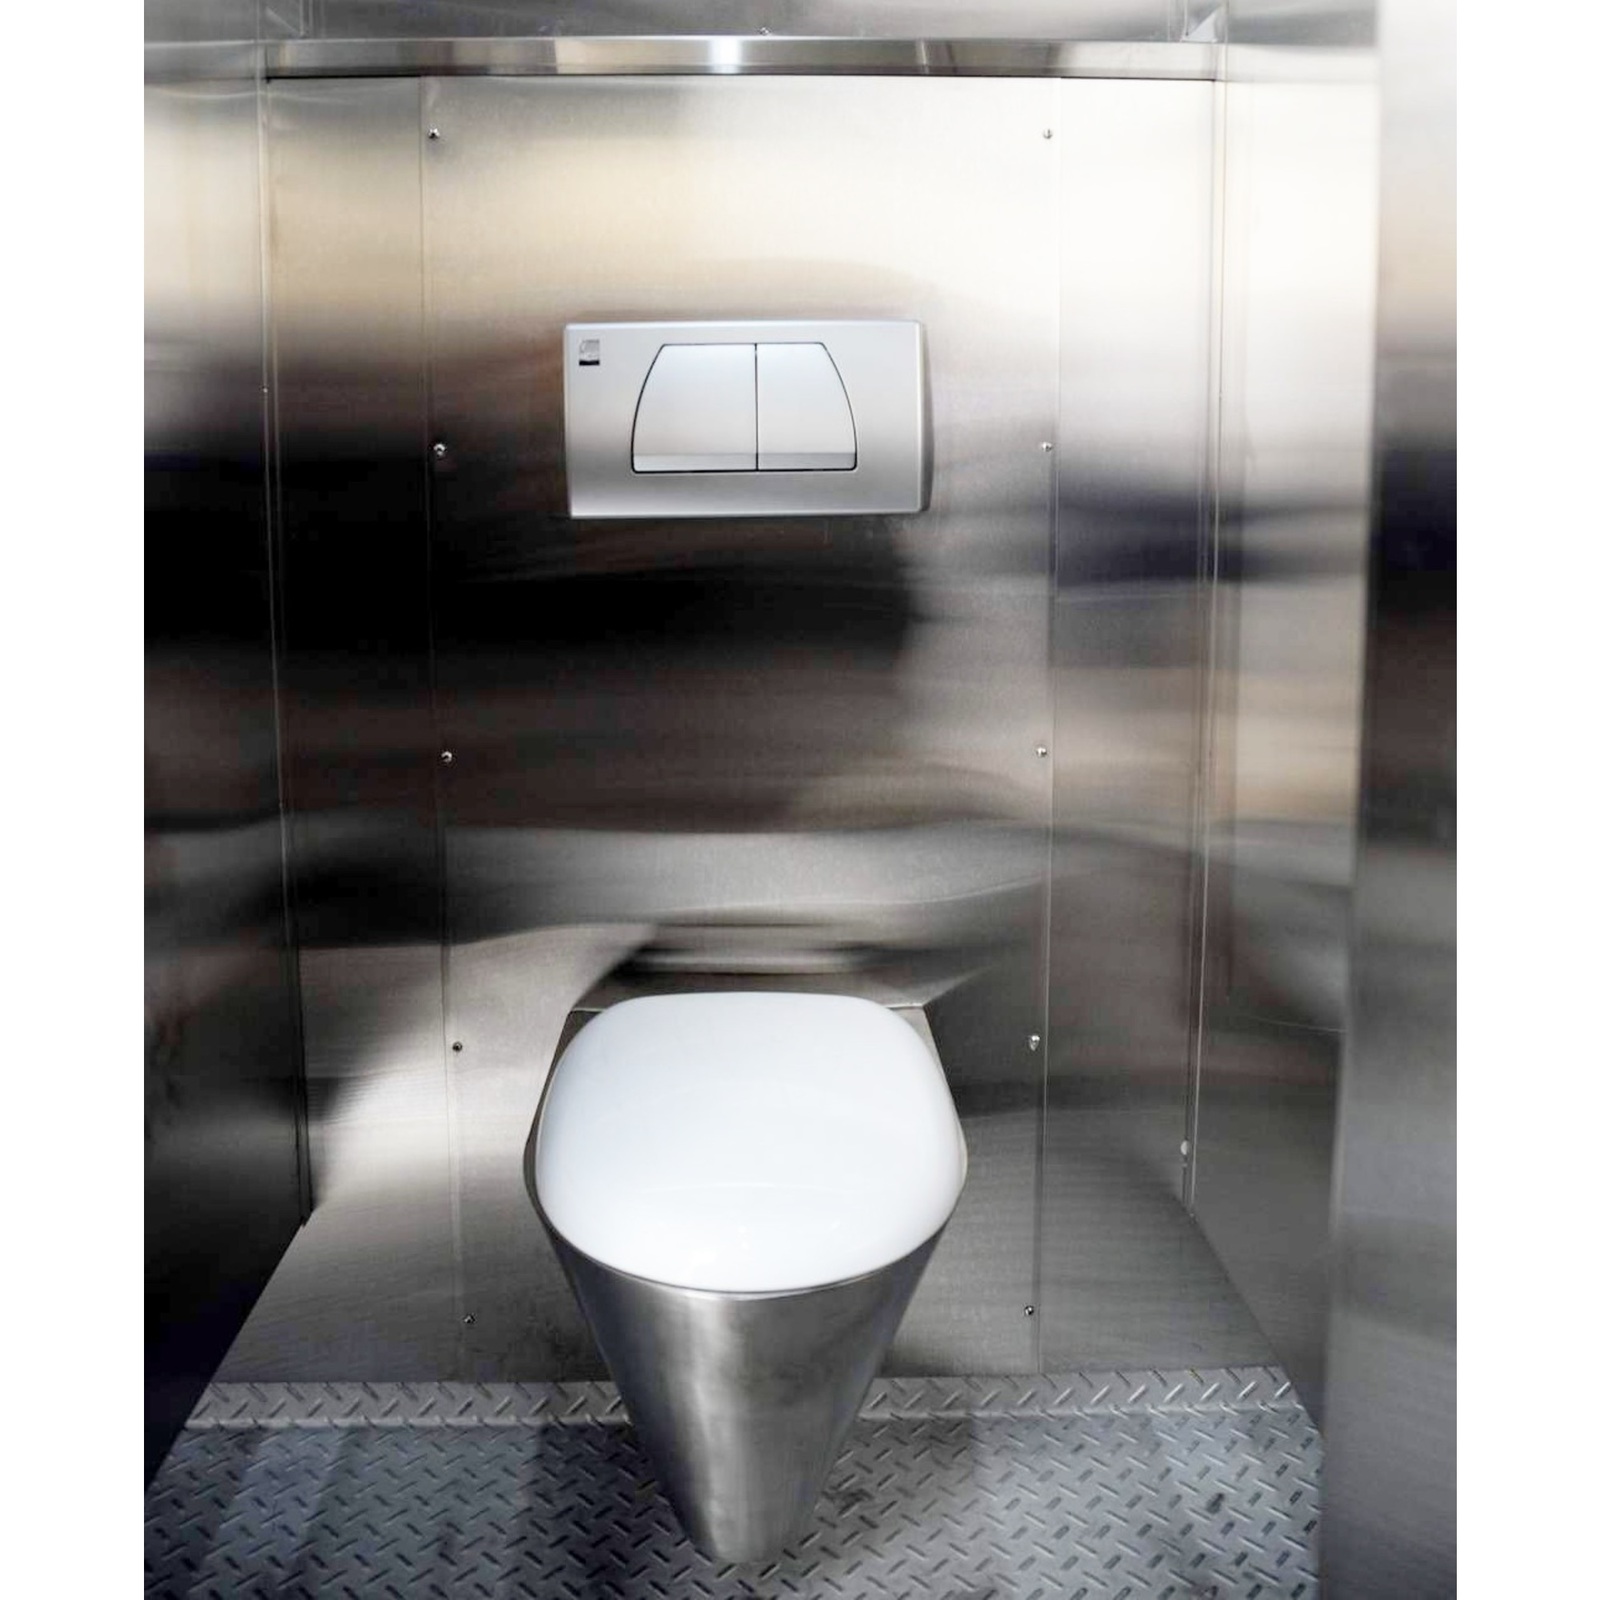 Conteneur de bloc toilettes préfabriqués - Chine Des toilettes publiques,  le conteneur Conteneur modulaire bloc de Toilette